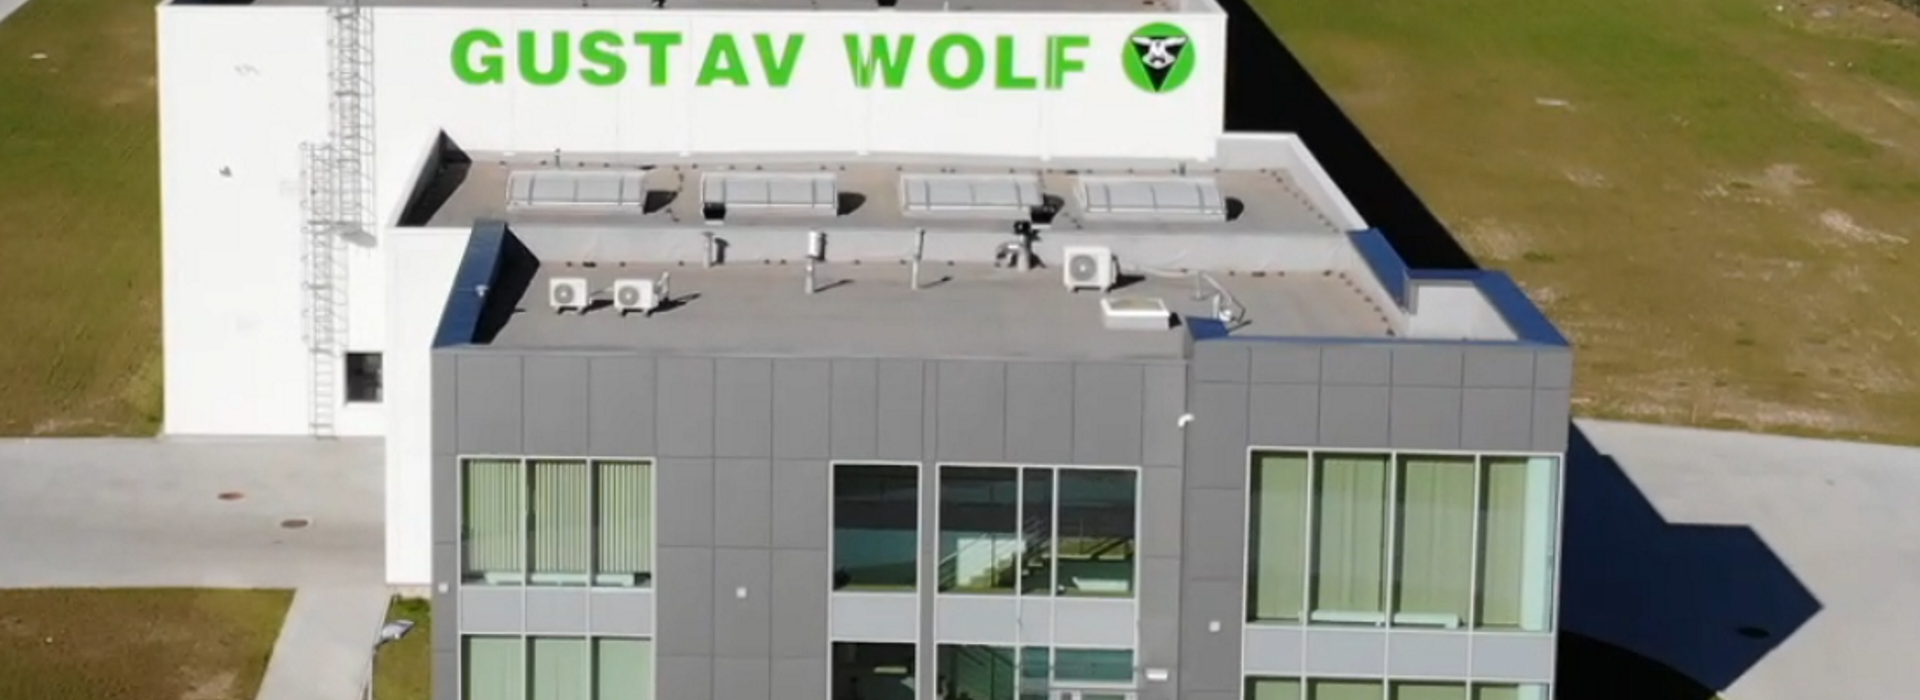 Kompleks biurowo produkcyjny Gustav Wolf wysposażony w rozwiązania wentylacyjno-klimatyzacyjne